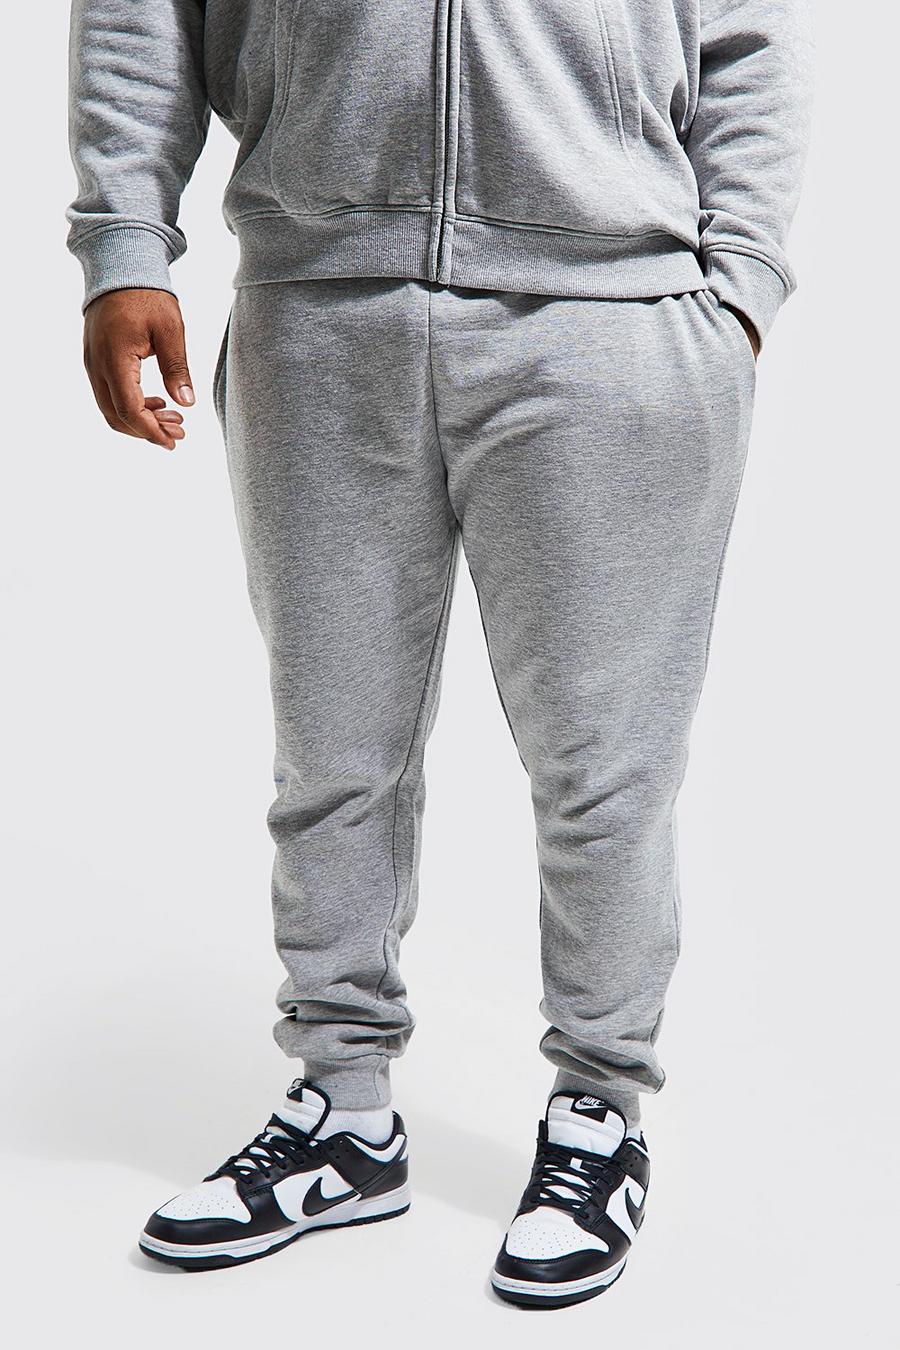 Pantalón deportivo Plus pitillo básico con algodón ecológico, Grey marl grigio